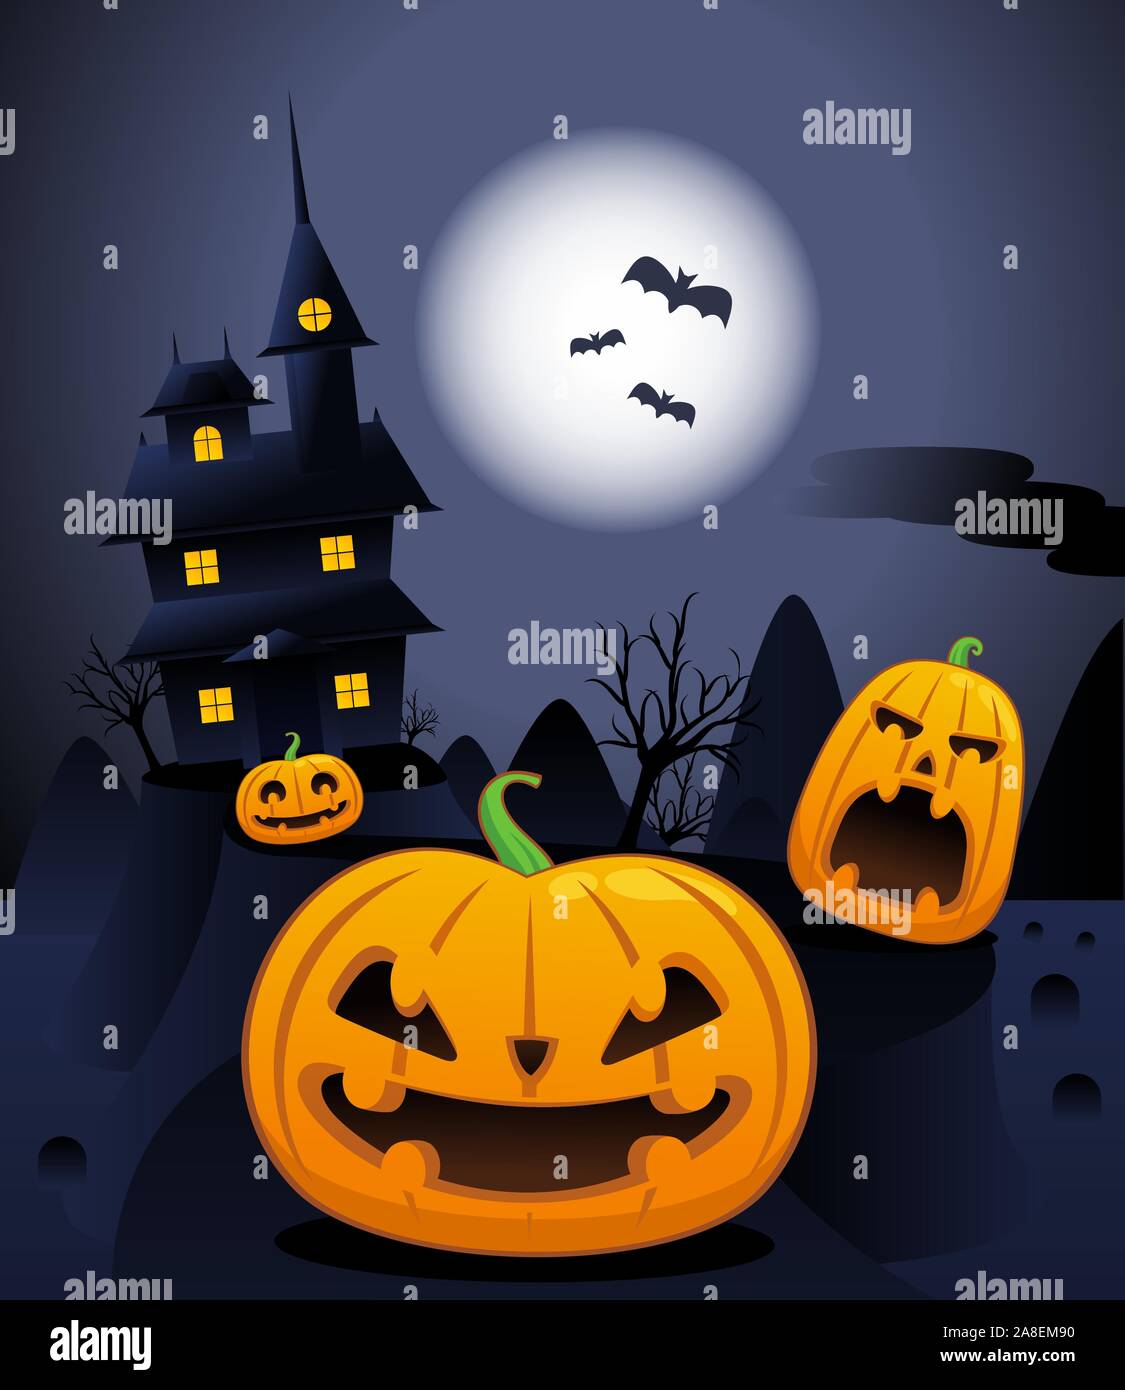 Halloween night scary pumpkin illustration Stock Vector